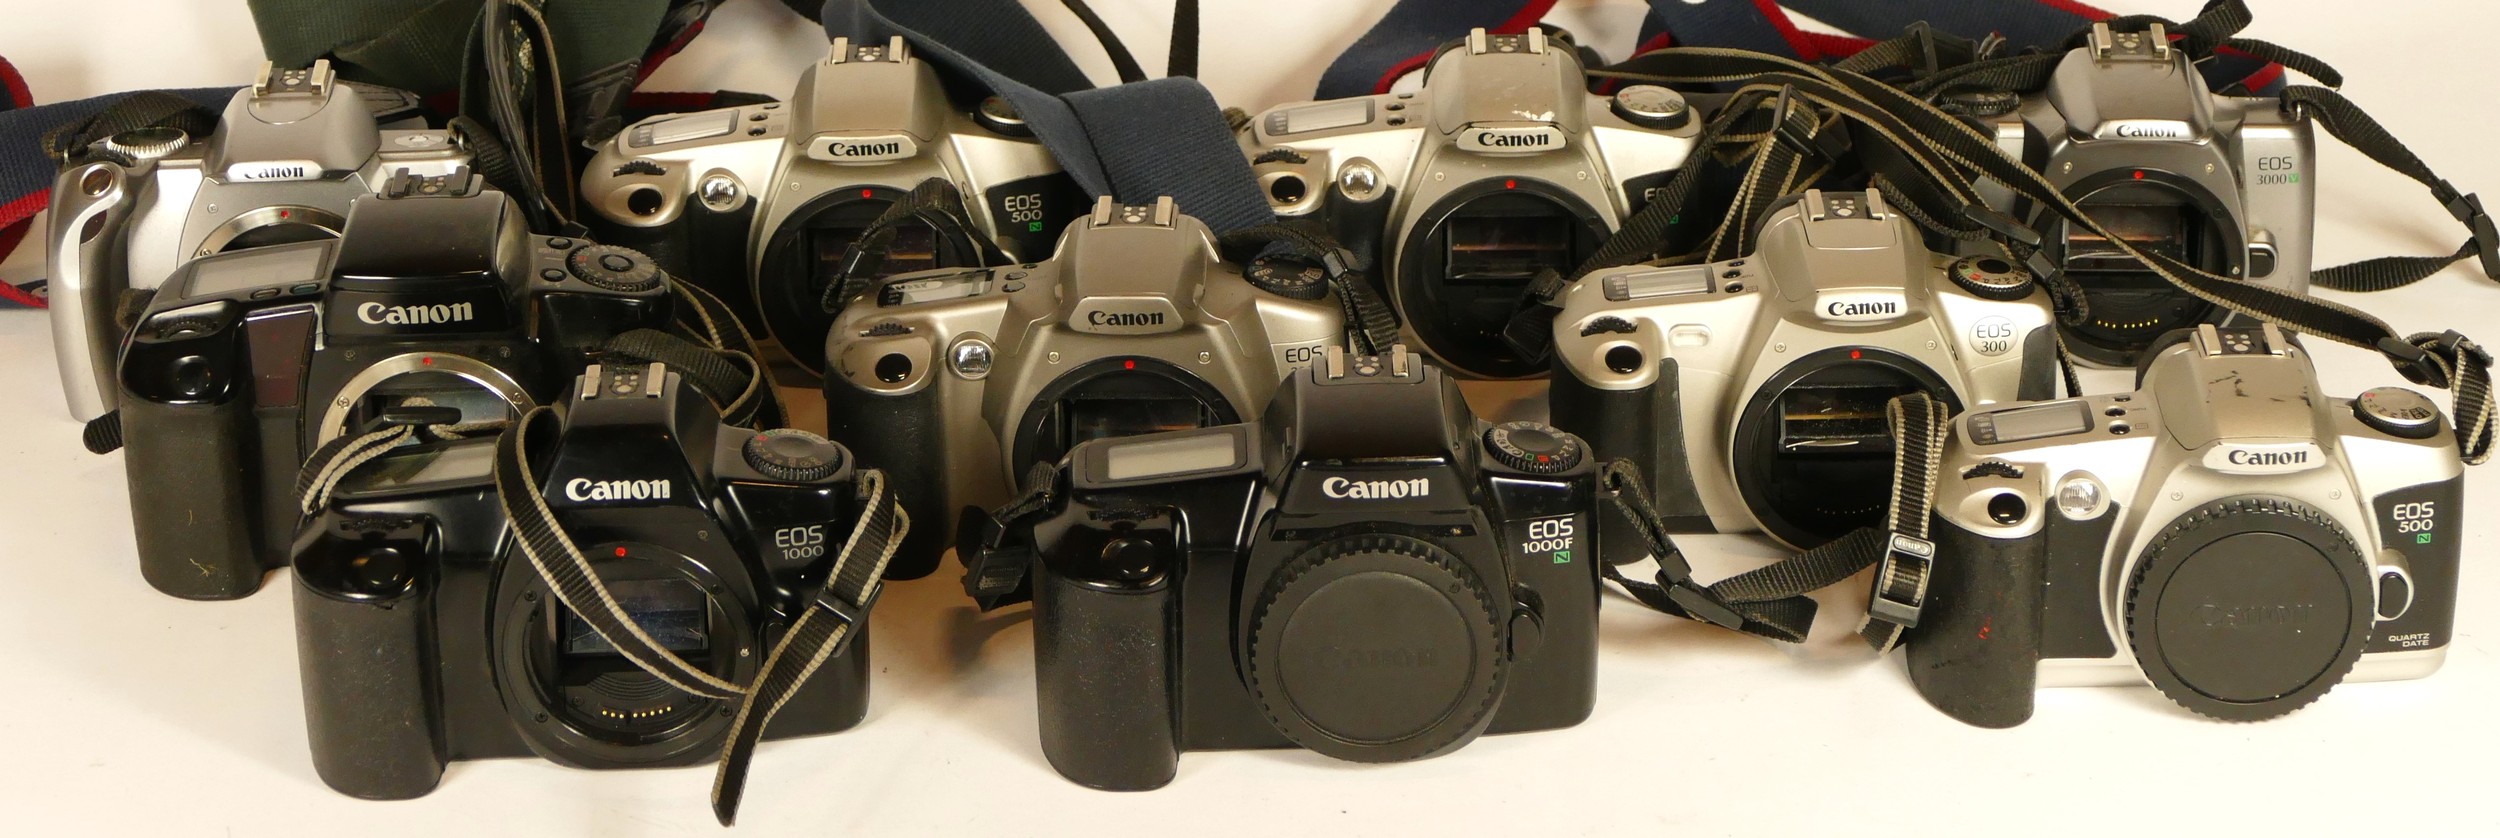 Ten Canon film camera bodies to include an EOS 300, an EOS 1...